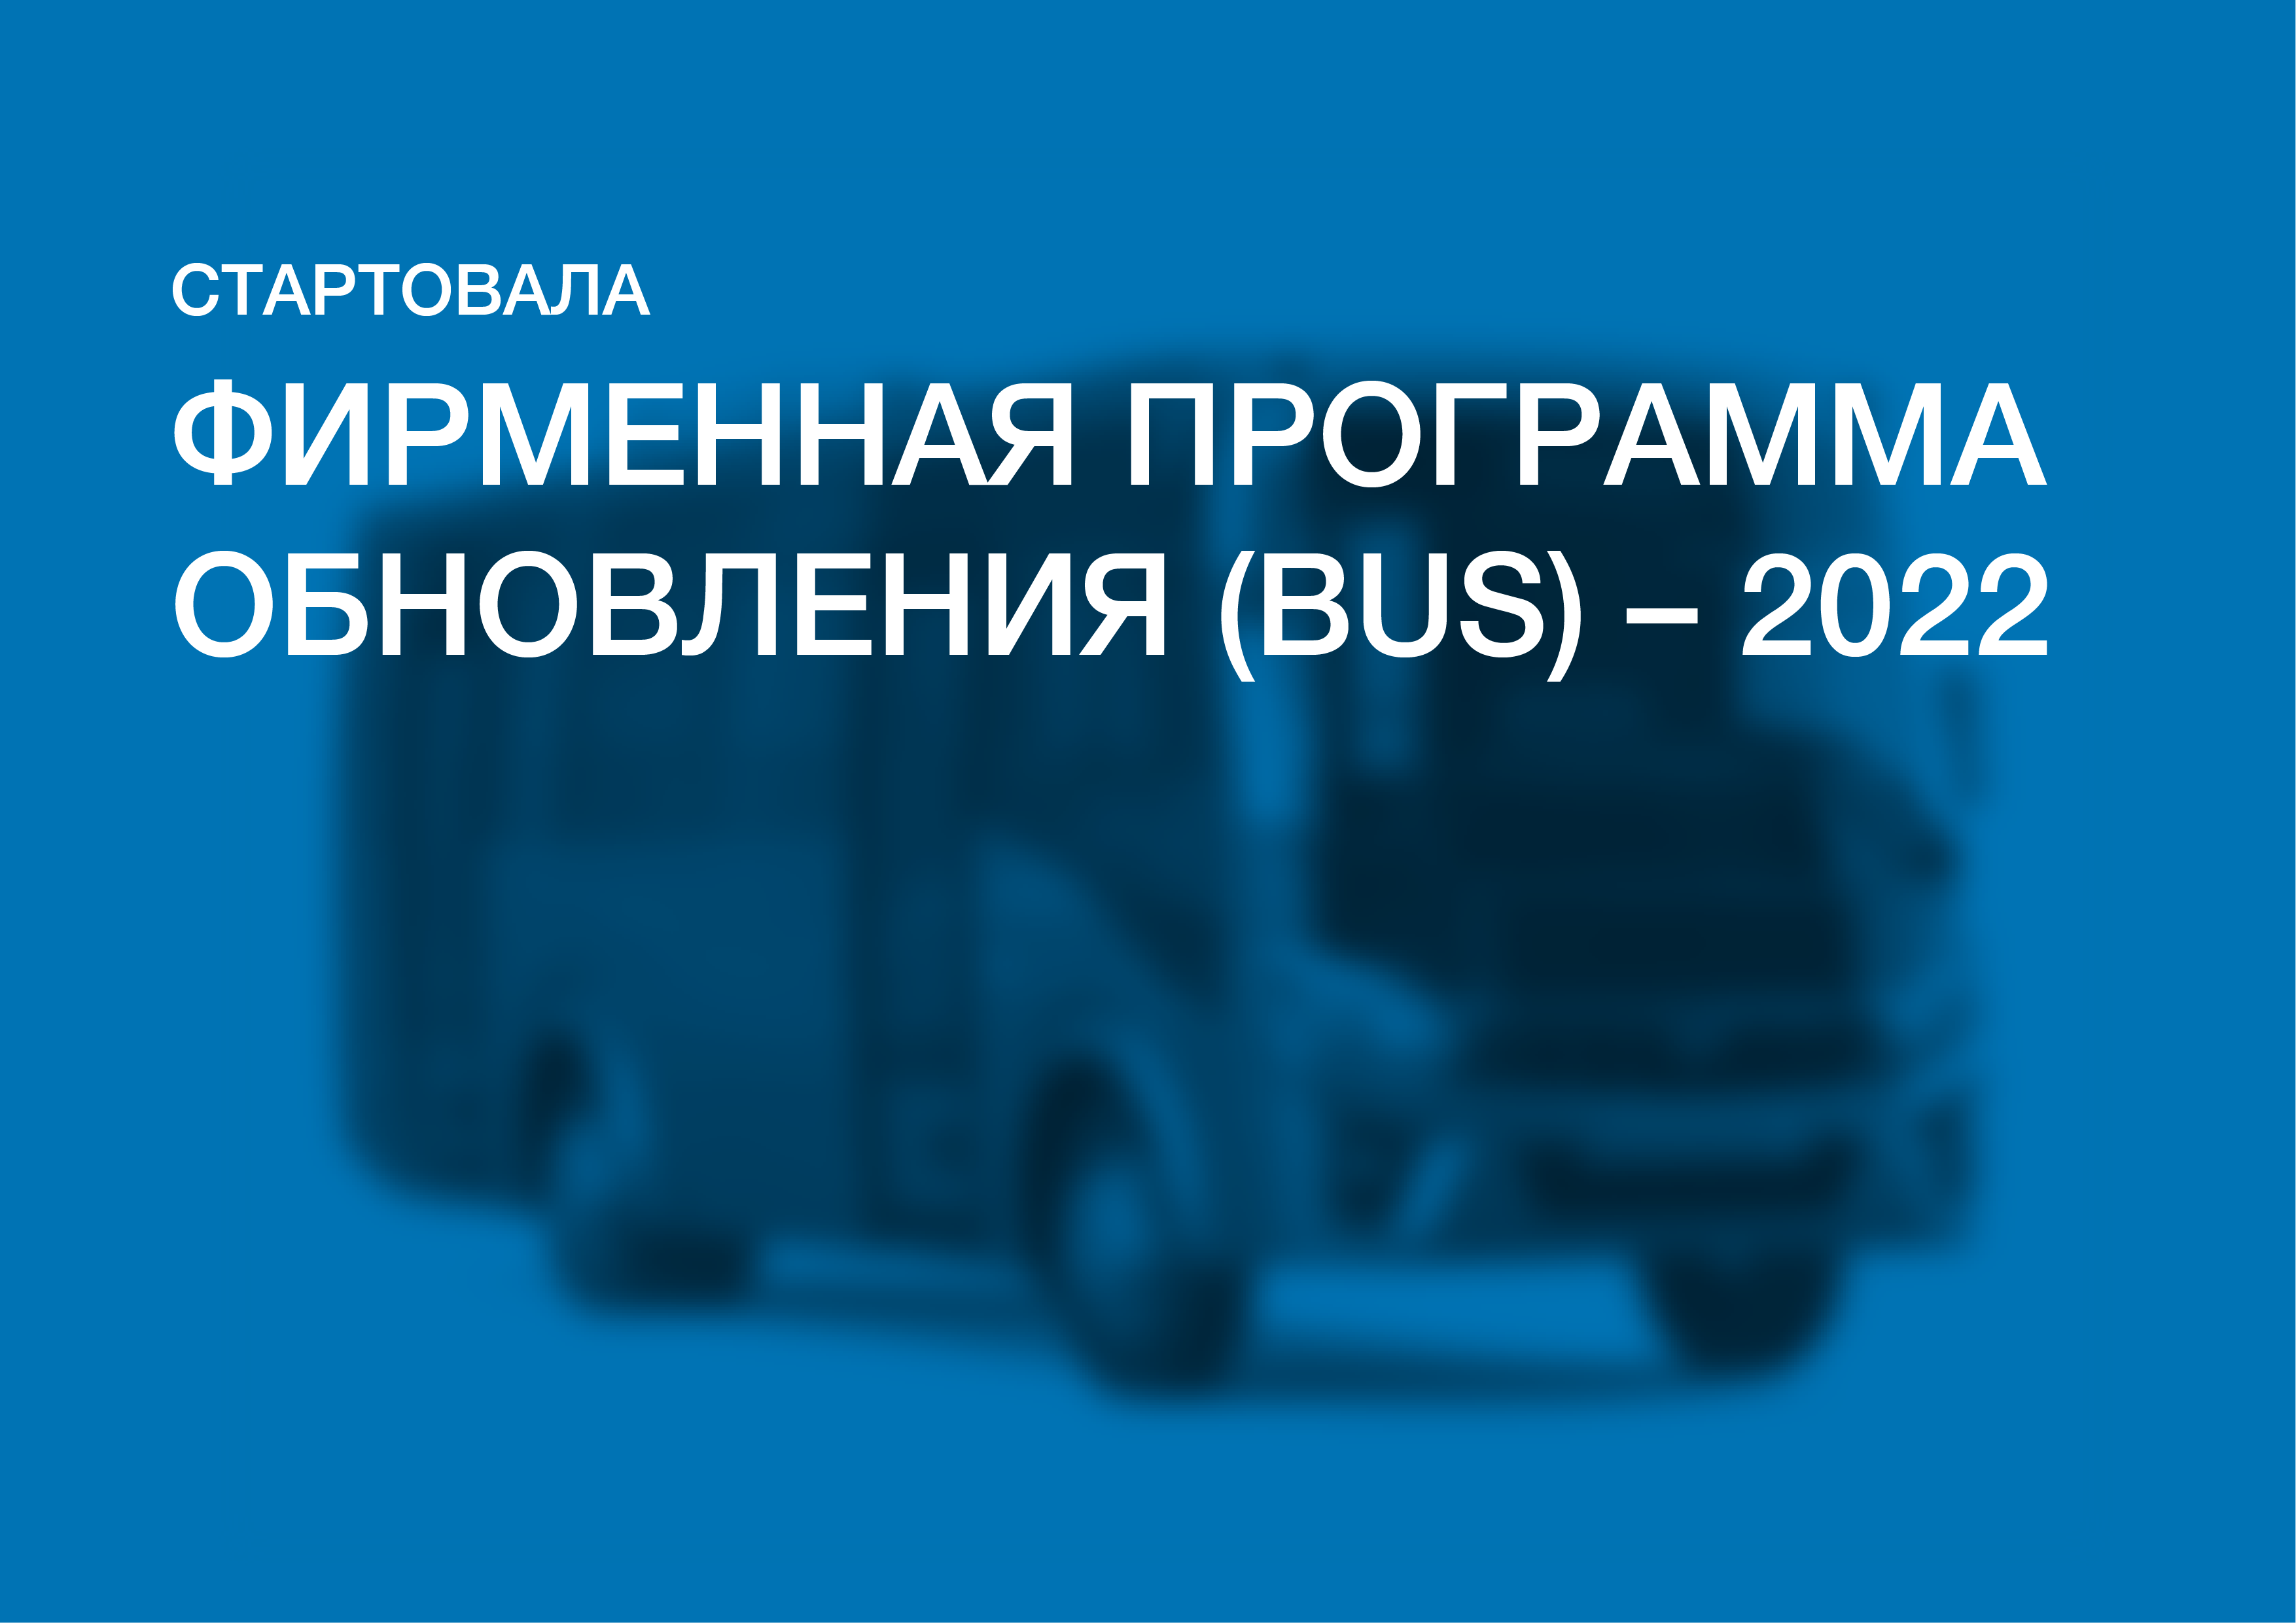 Стартовала Фирменная программа обновления (BUS) – 2022!  